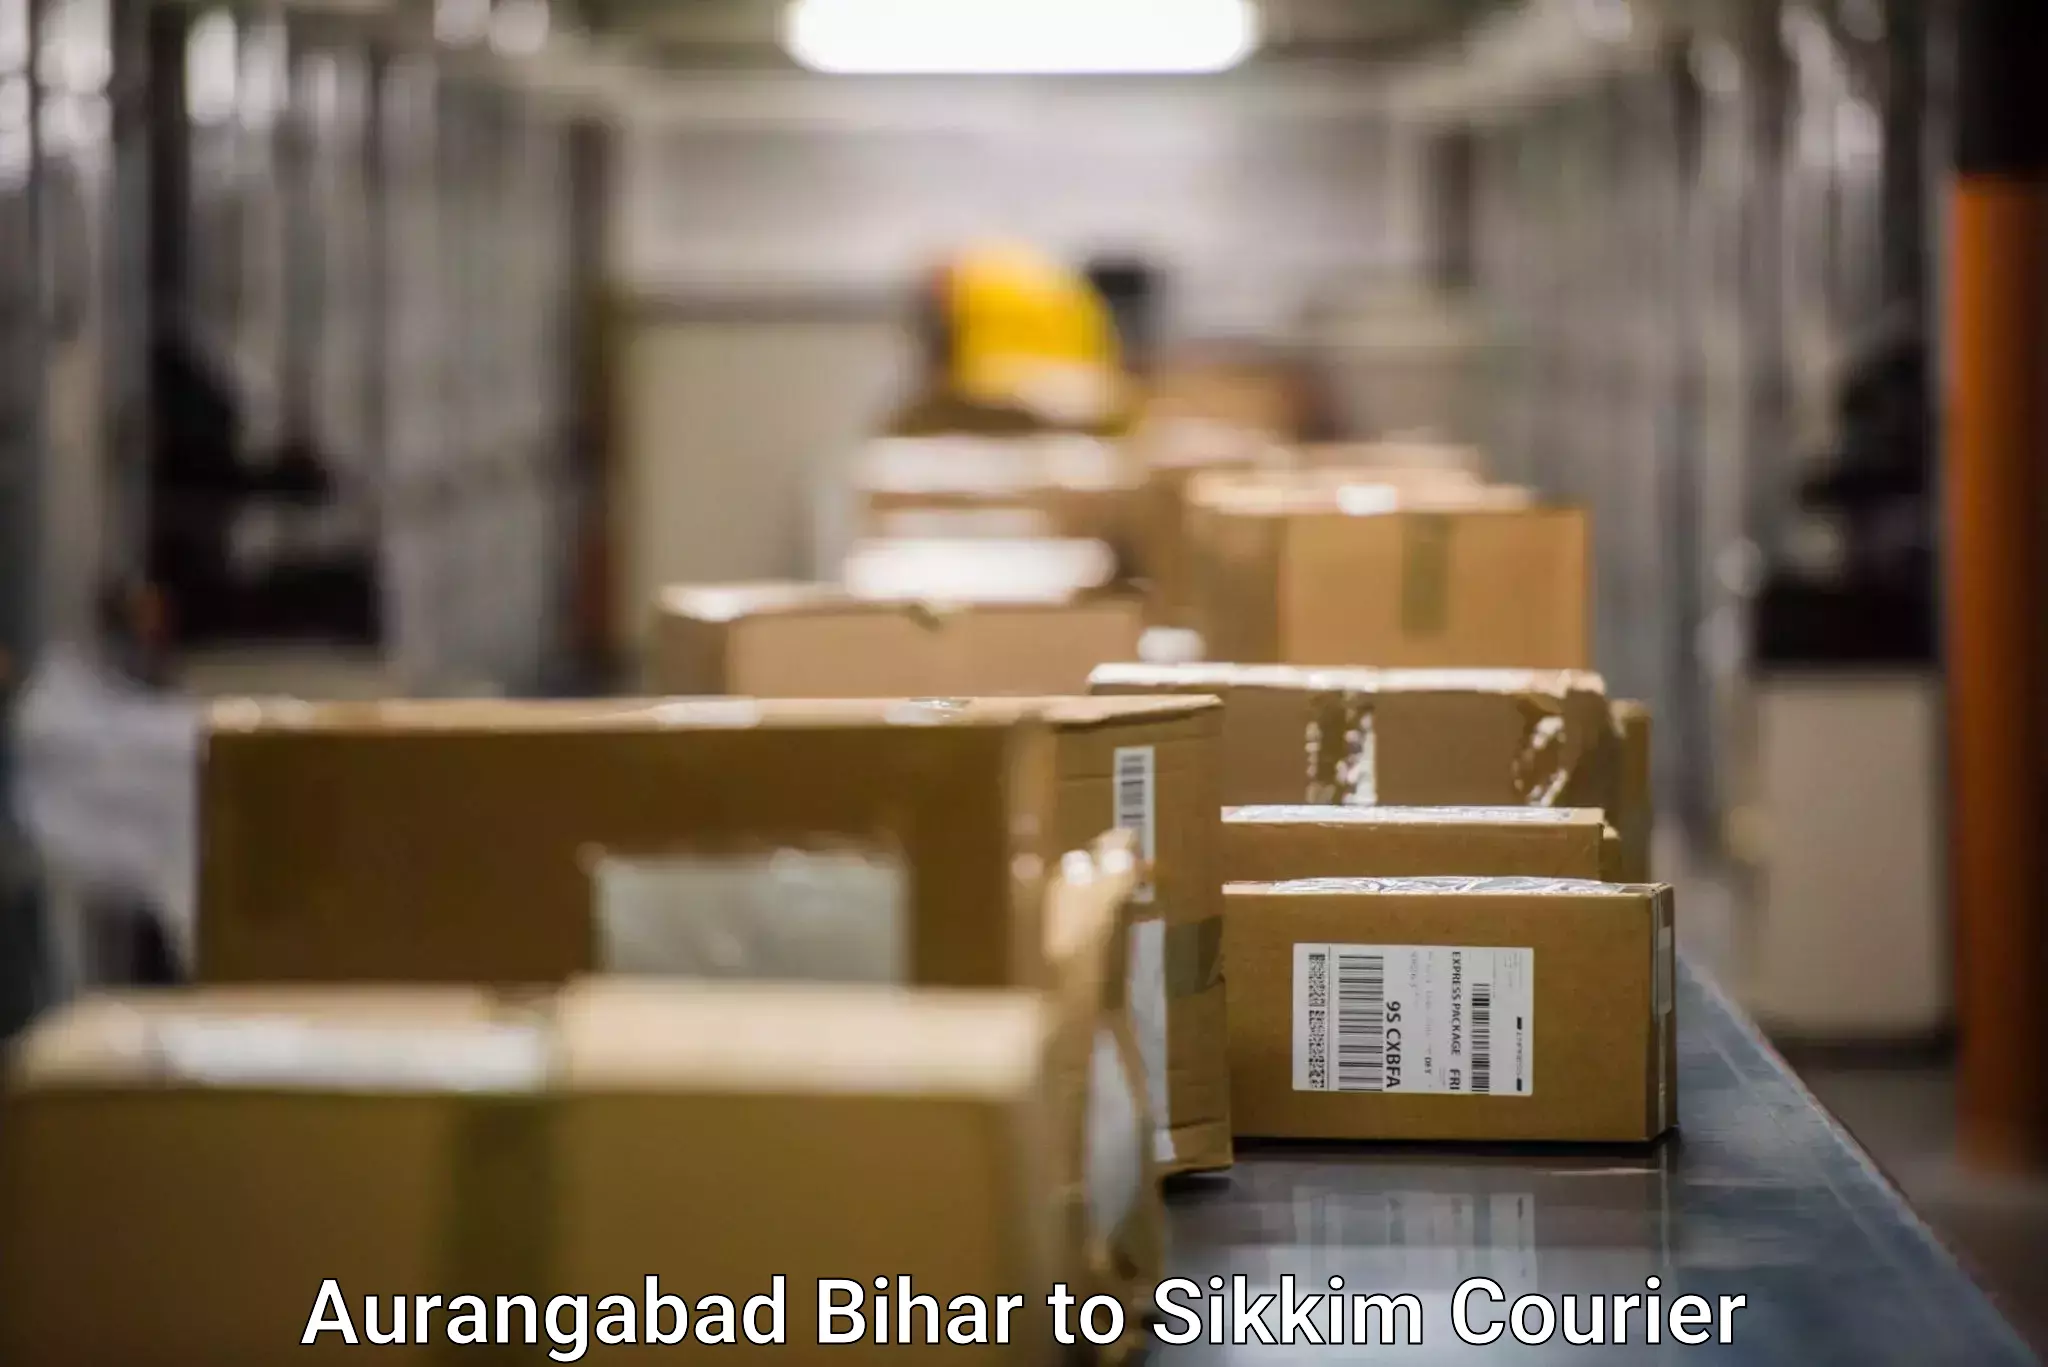 24/7 courier service Aurangabad Bihar to East Sikkim